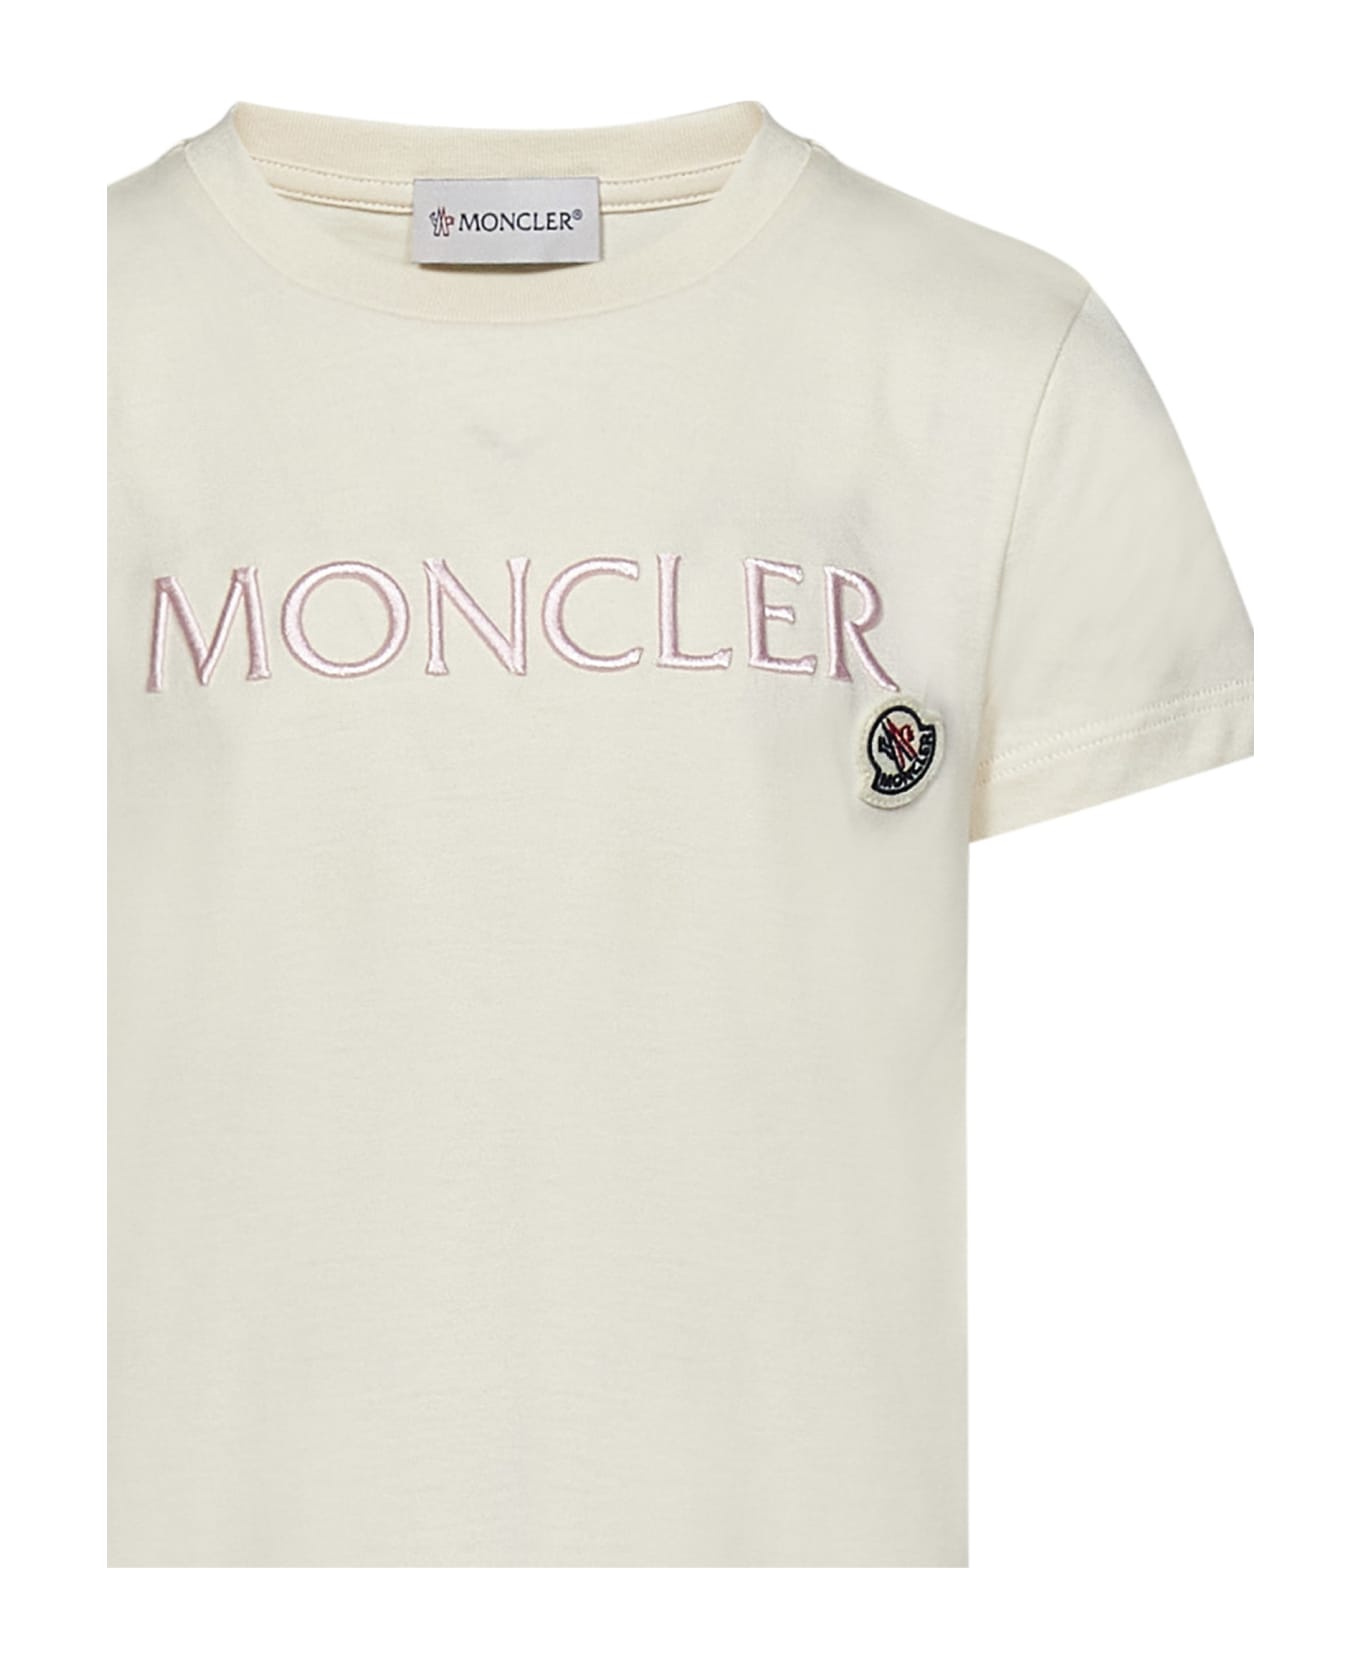 Moncler T-shirt - Cream